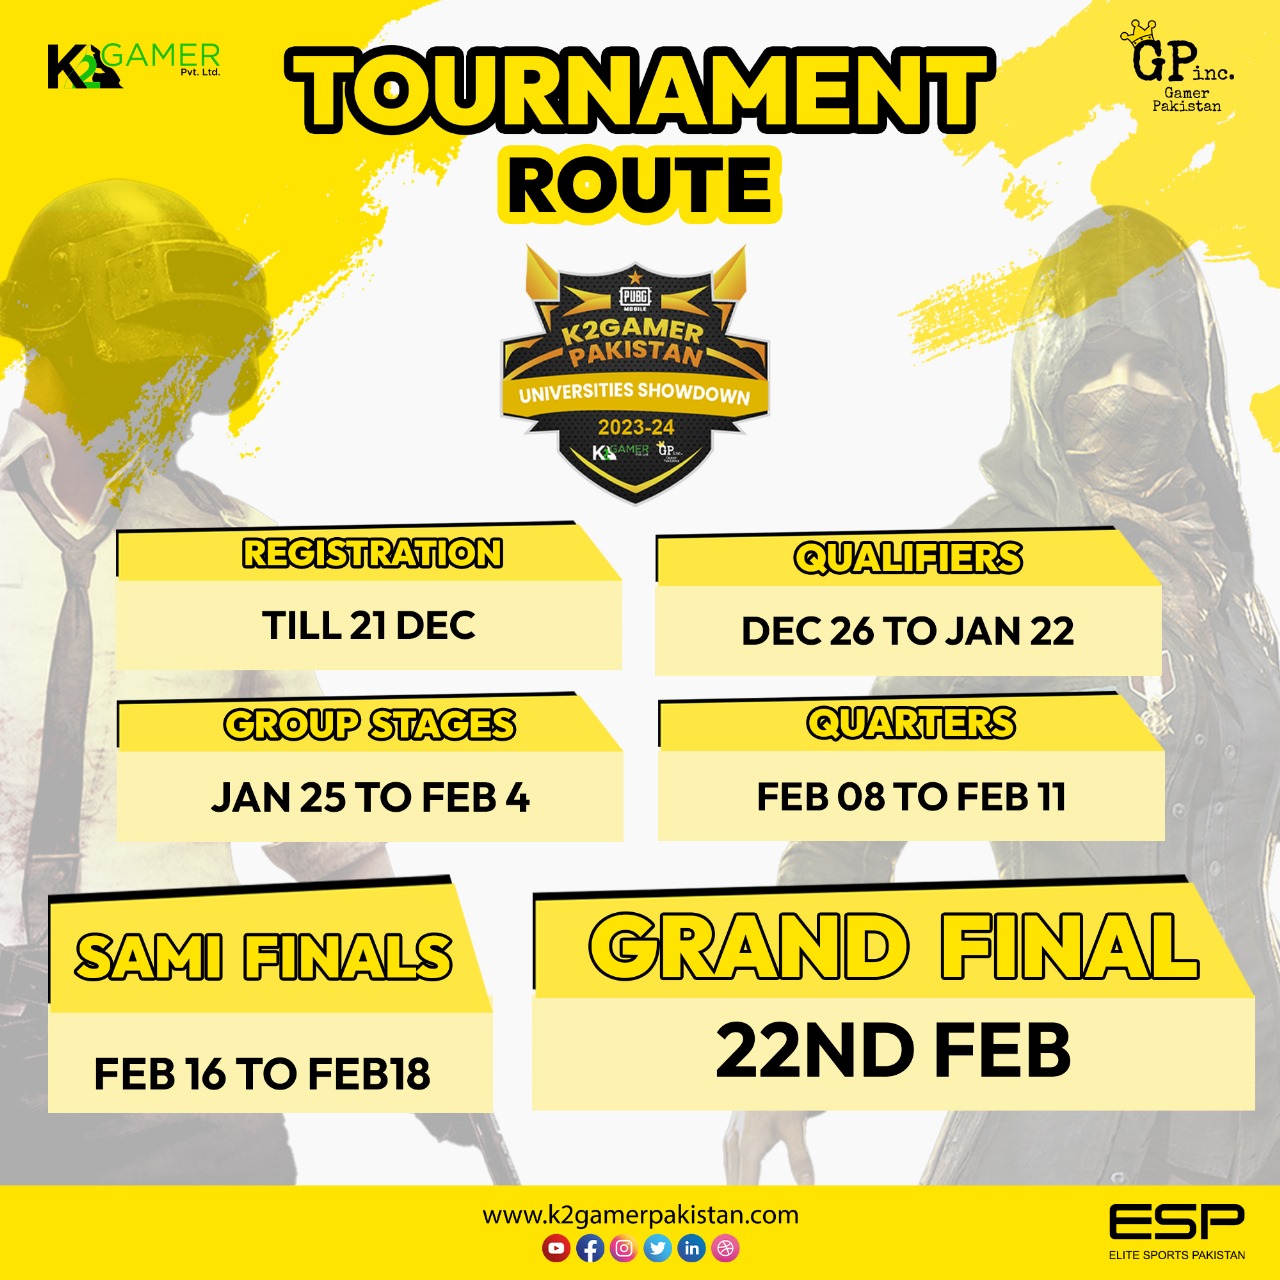 K2 Gamer University shutdown 2023-24 Tournament Route